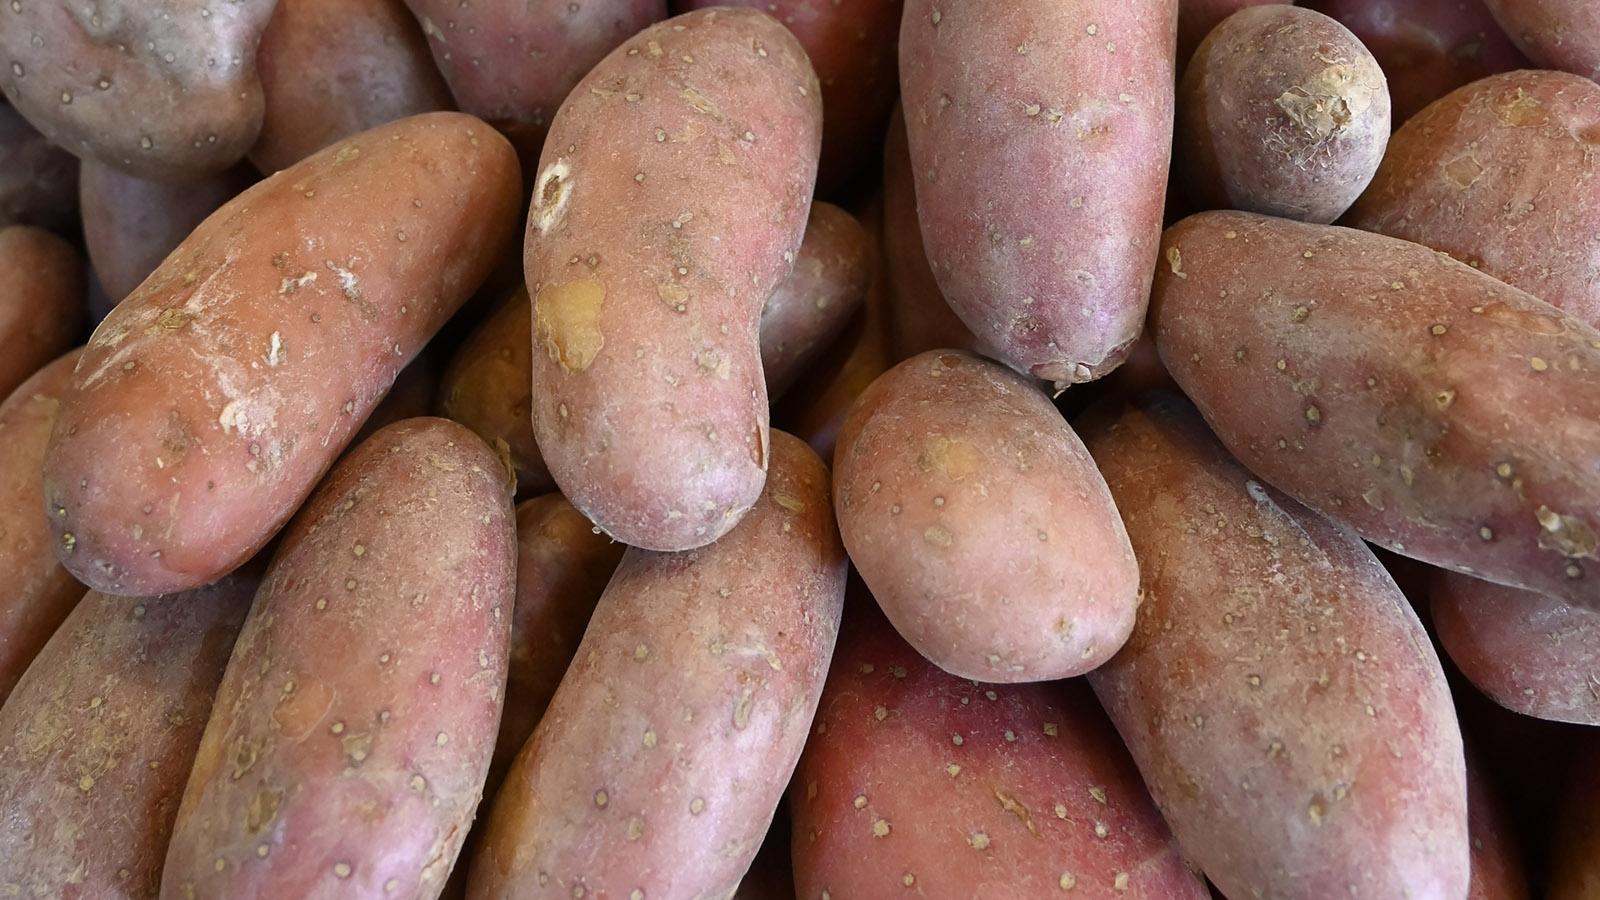 Chérie nennt sich diese hellrote Kartoffelsorte, die ich in der Markthalle von Menton entdeckte. Foto: Hilke Maunder